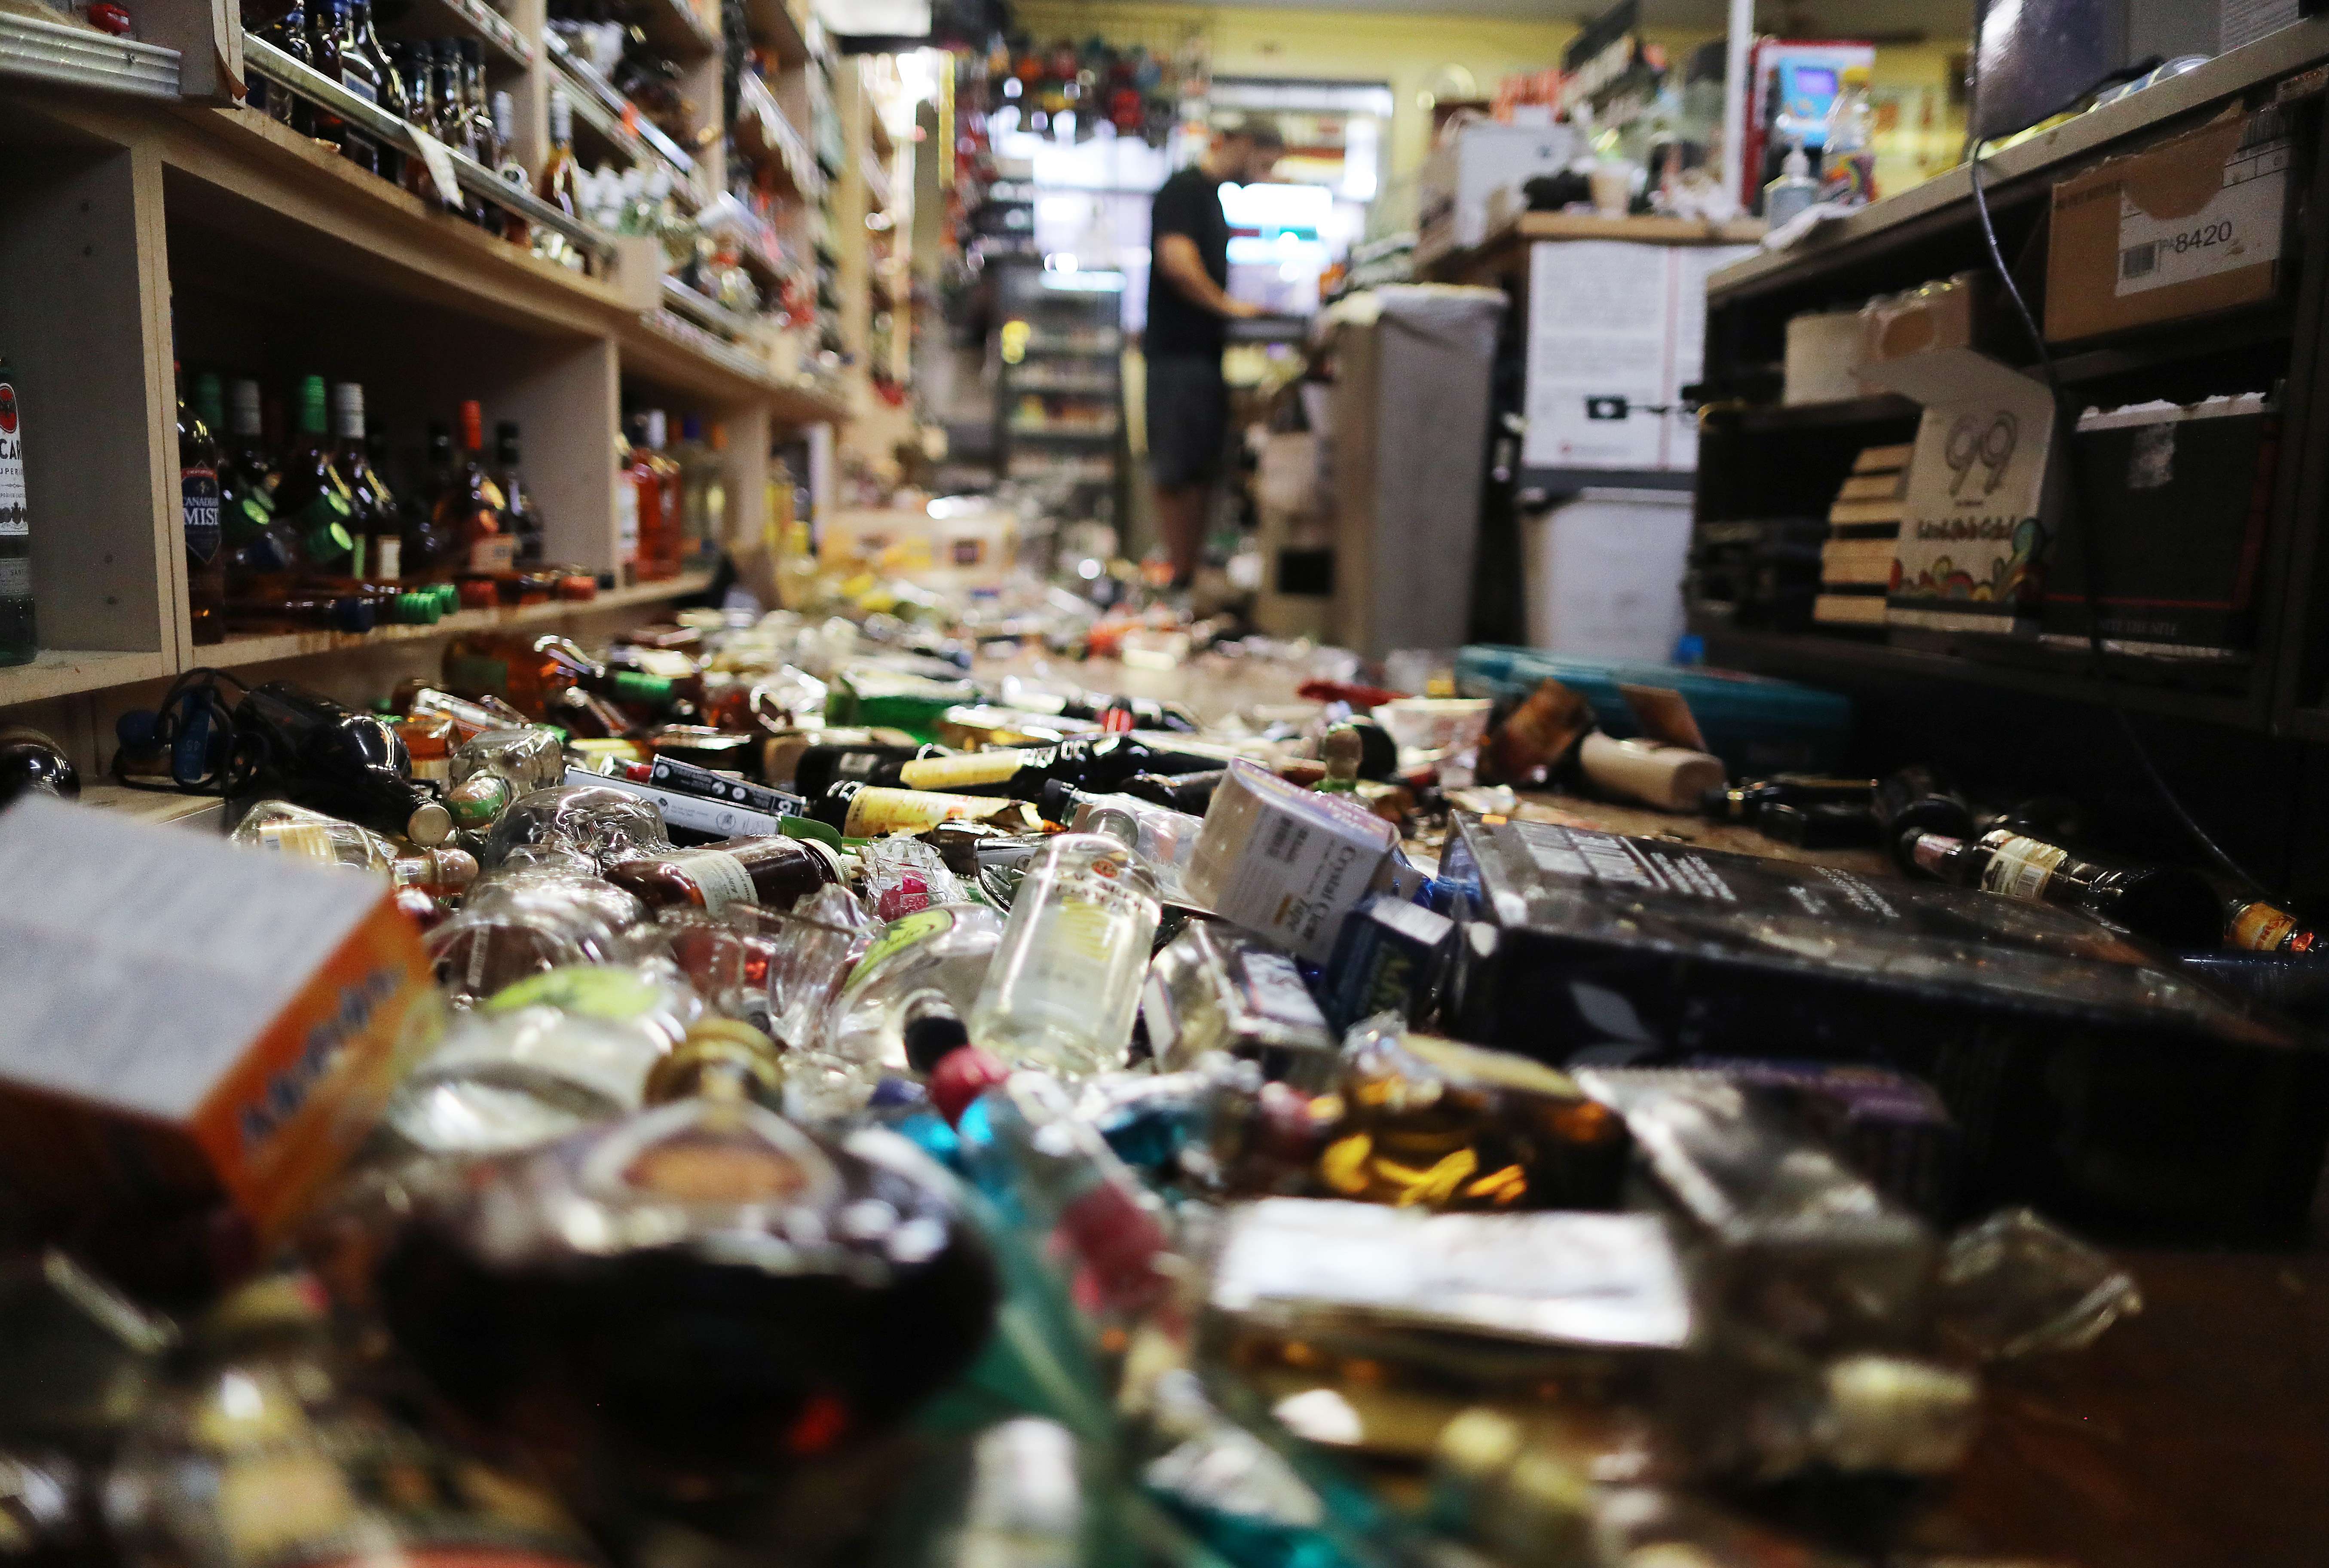 Un empleado trabaja en la caja registradora cerca de botellas rotas esparcidas en el piso, luego del sismo de magnitud 7.1 que afectó California. (Foto Prensa Libre AFP).